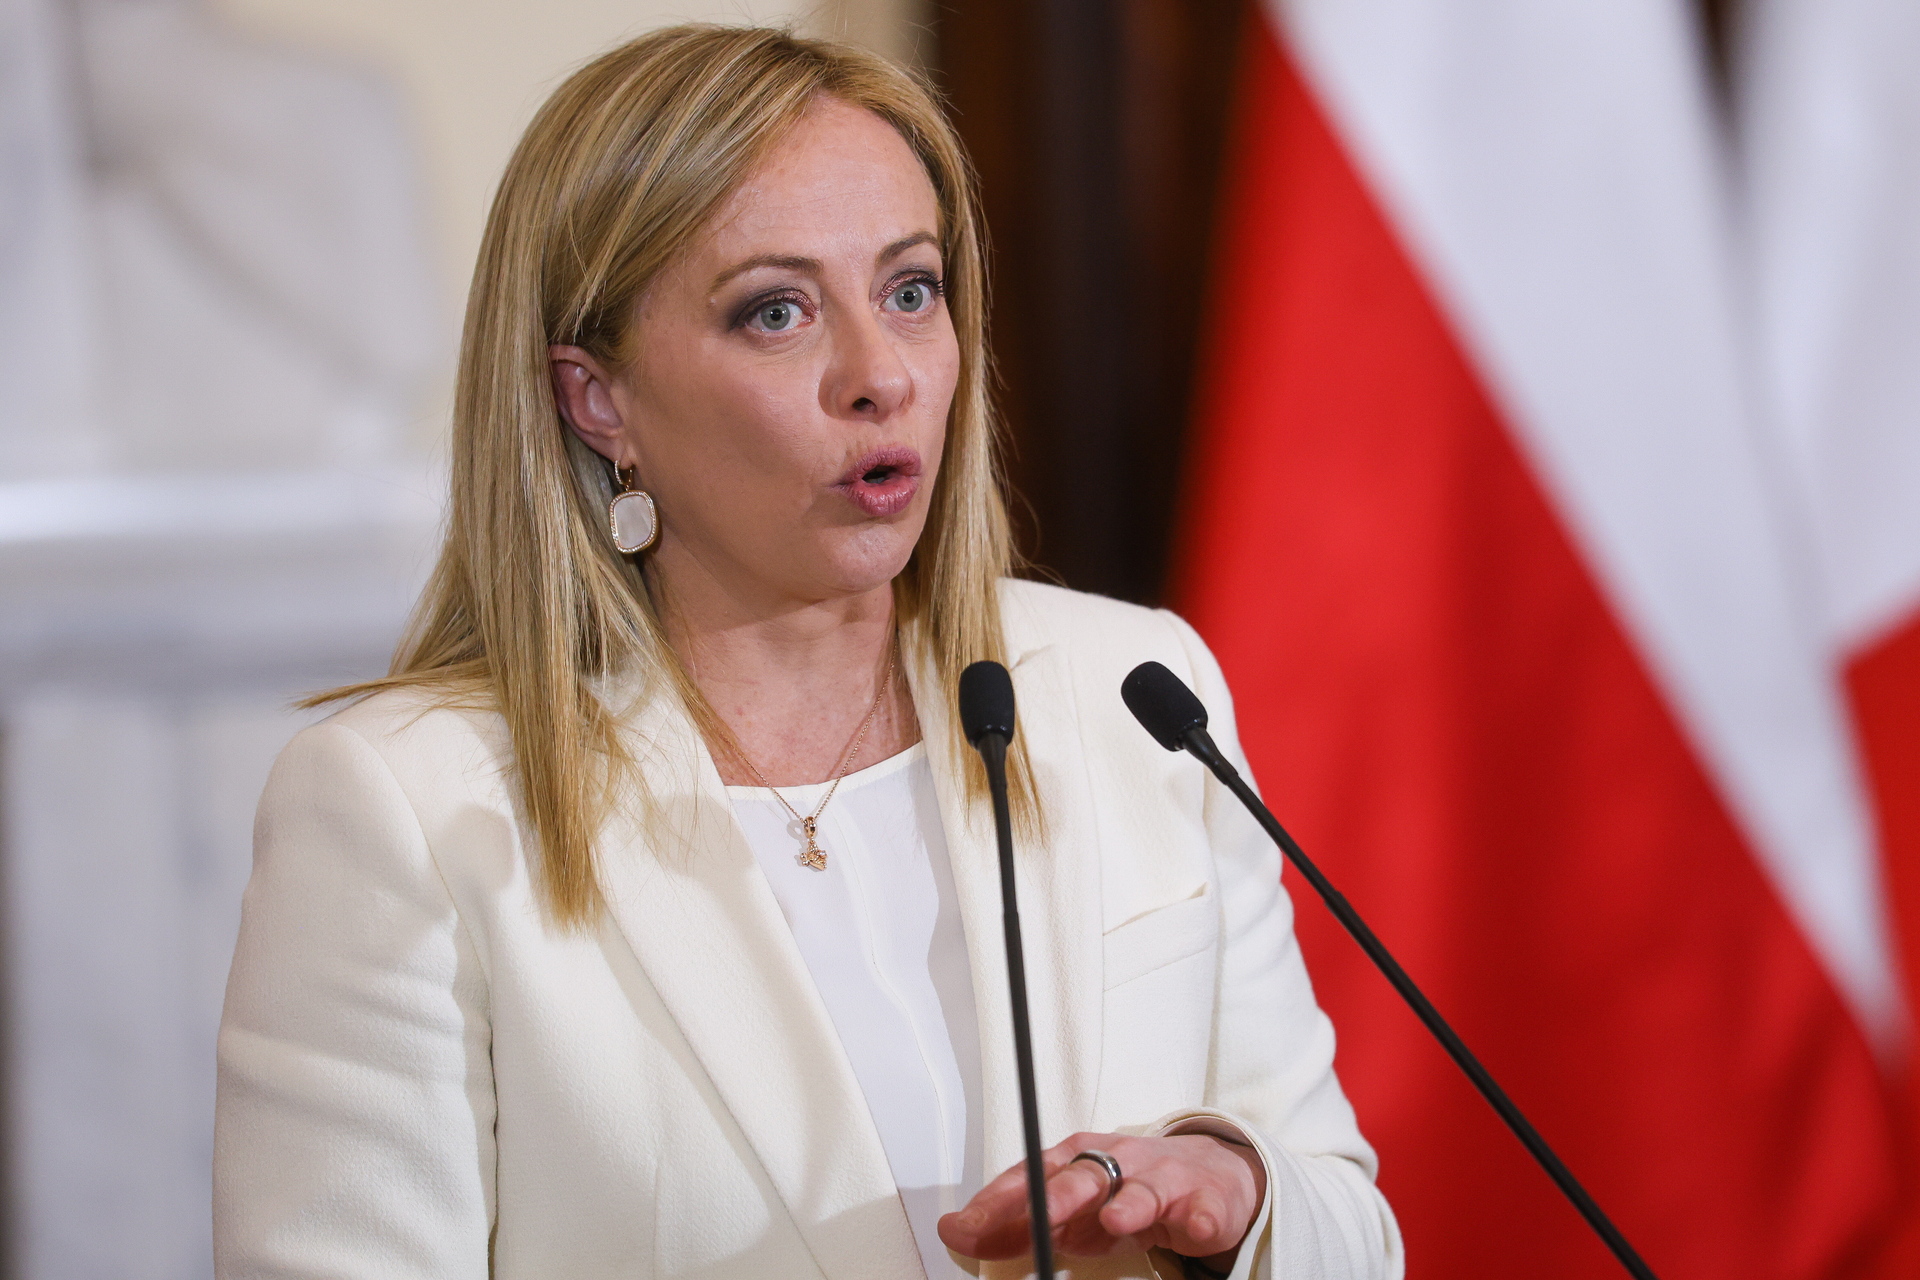 La primera ministra italiana también habló del pasaje del discurso de Putin en el que calificaba al Gobierno ucraniano de “régimen”. (RAFAL GUZ / EFE)